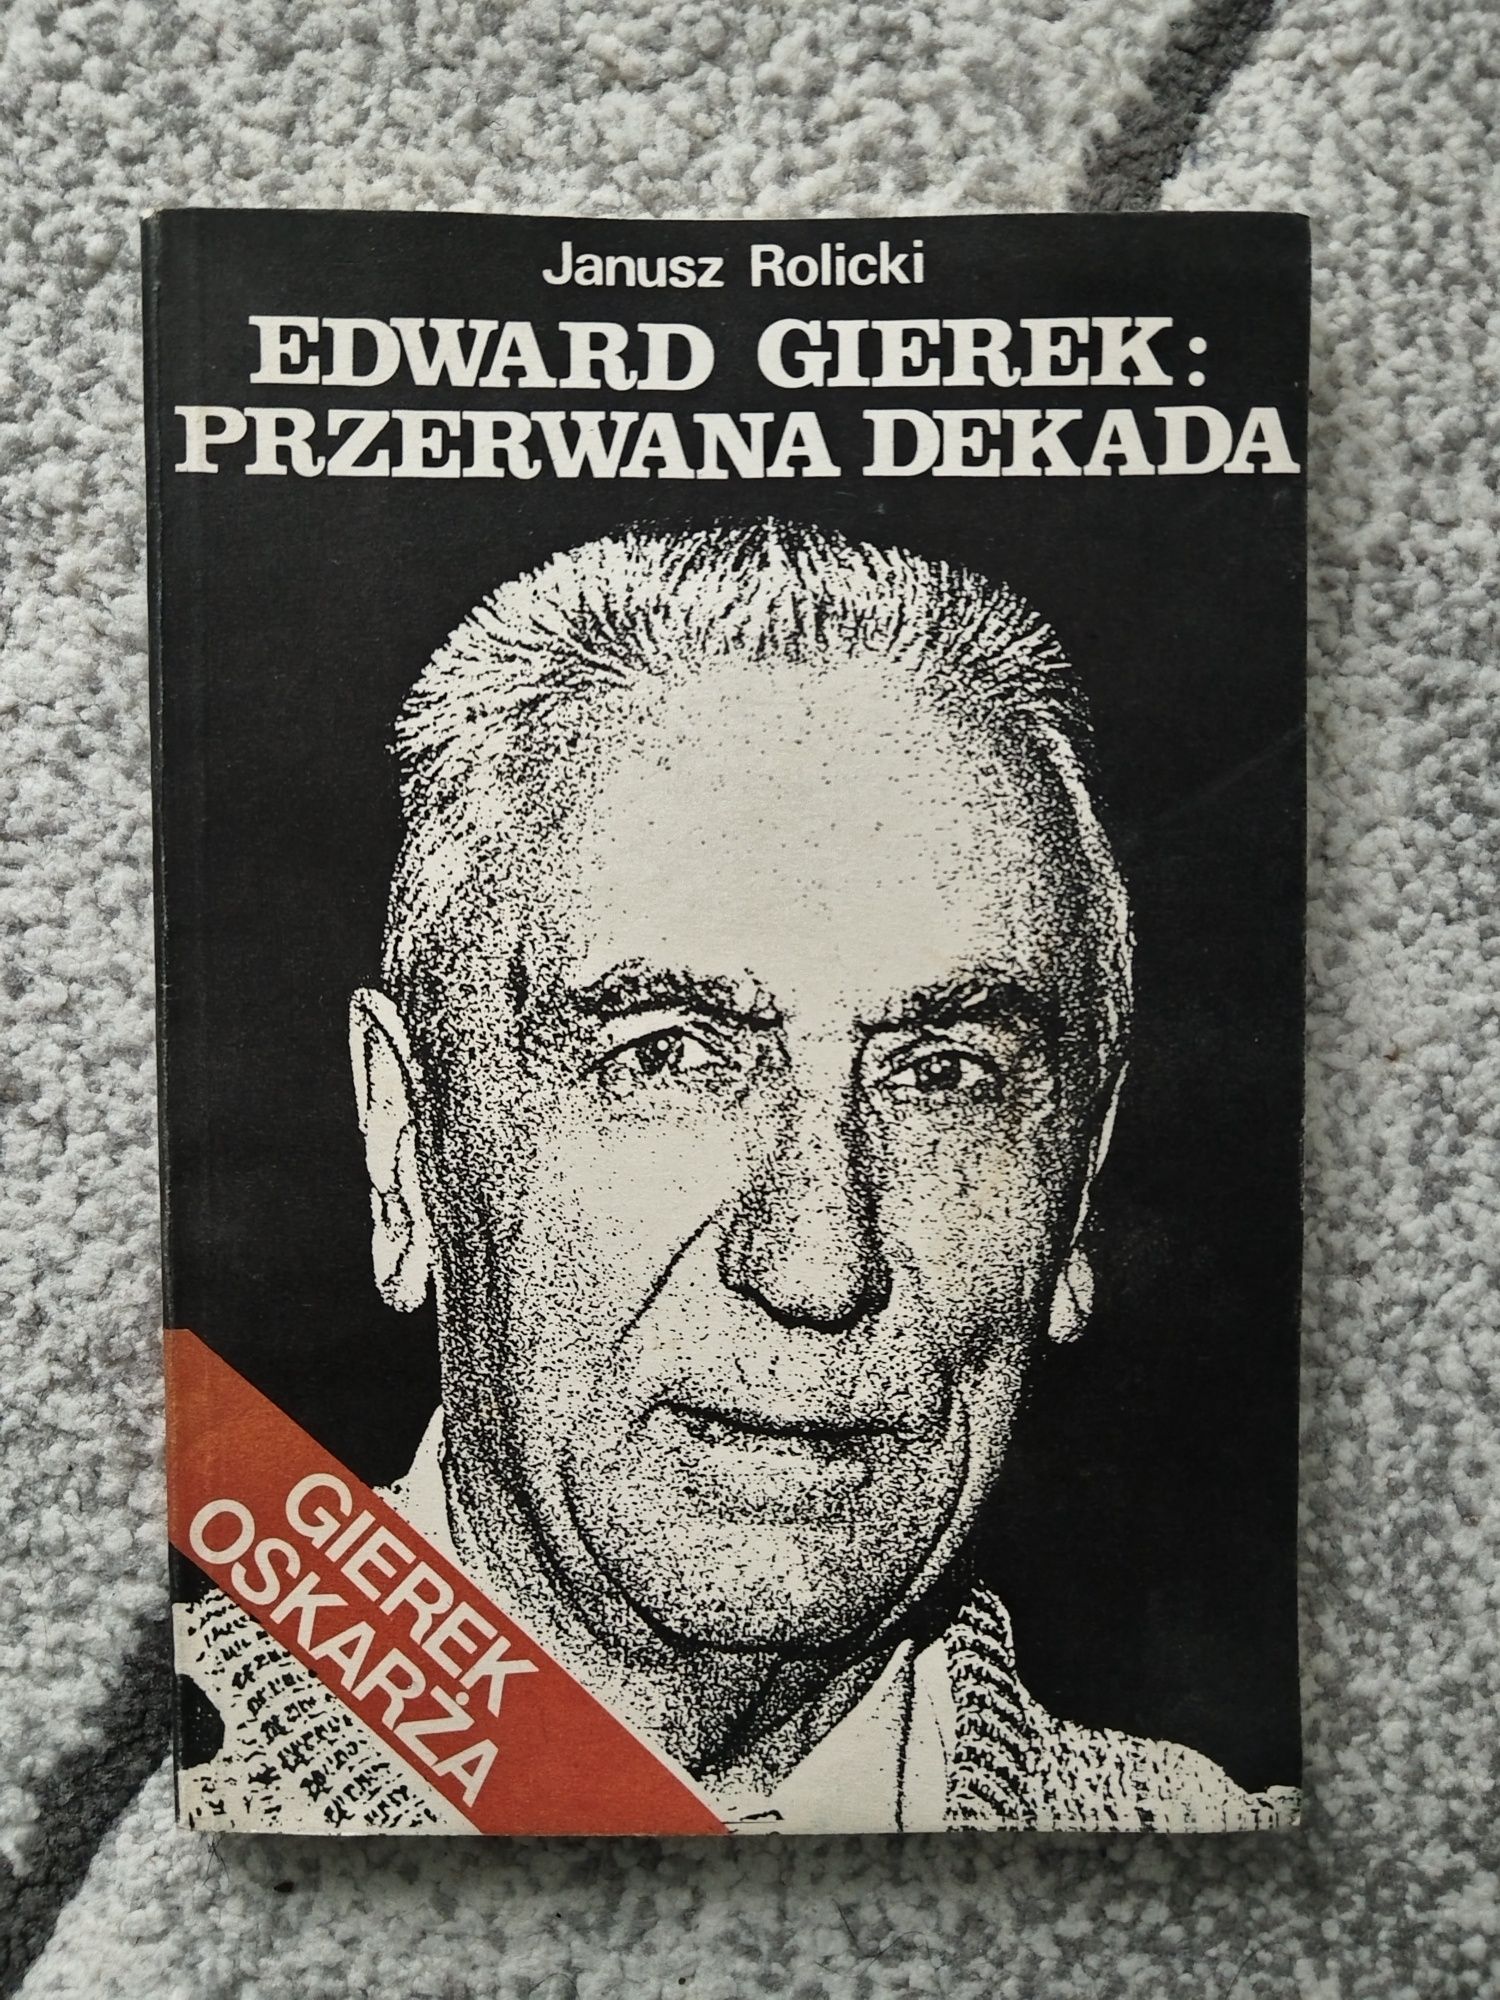 Janusz Rolicki Edward Gierek przerwana dekada